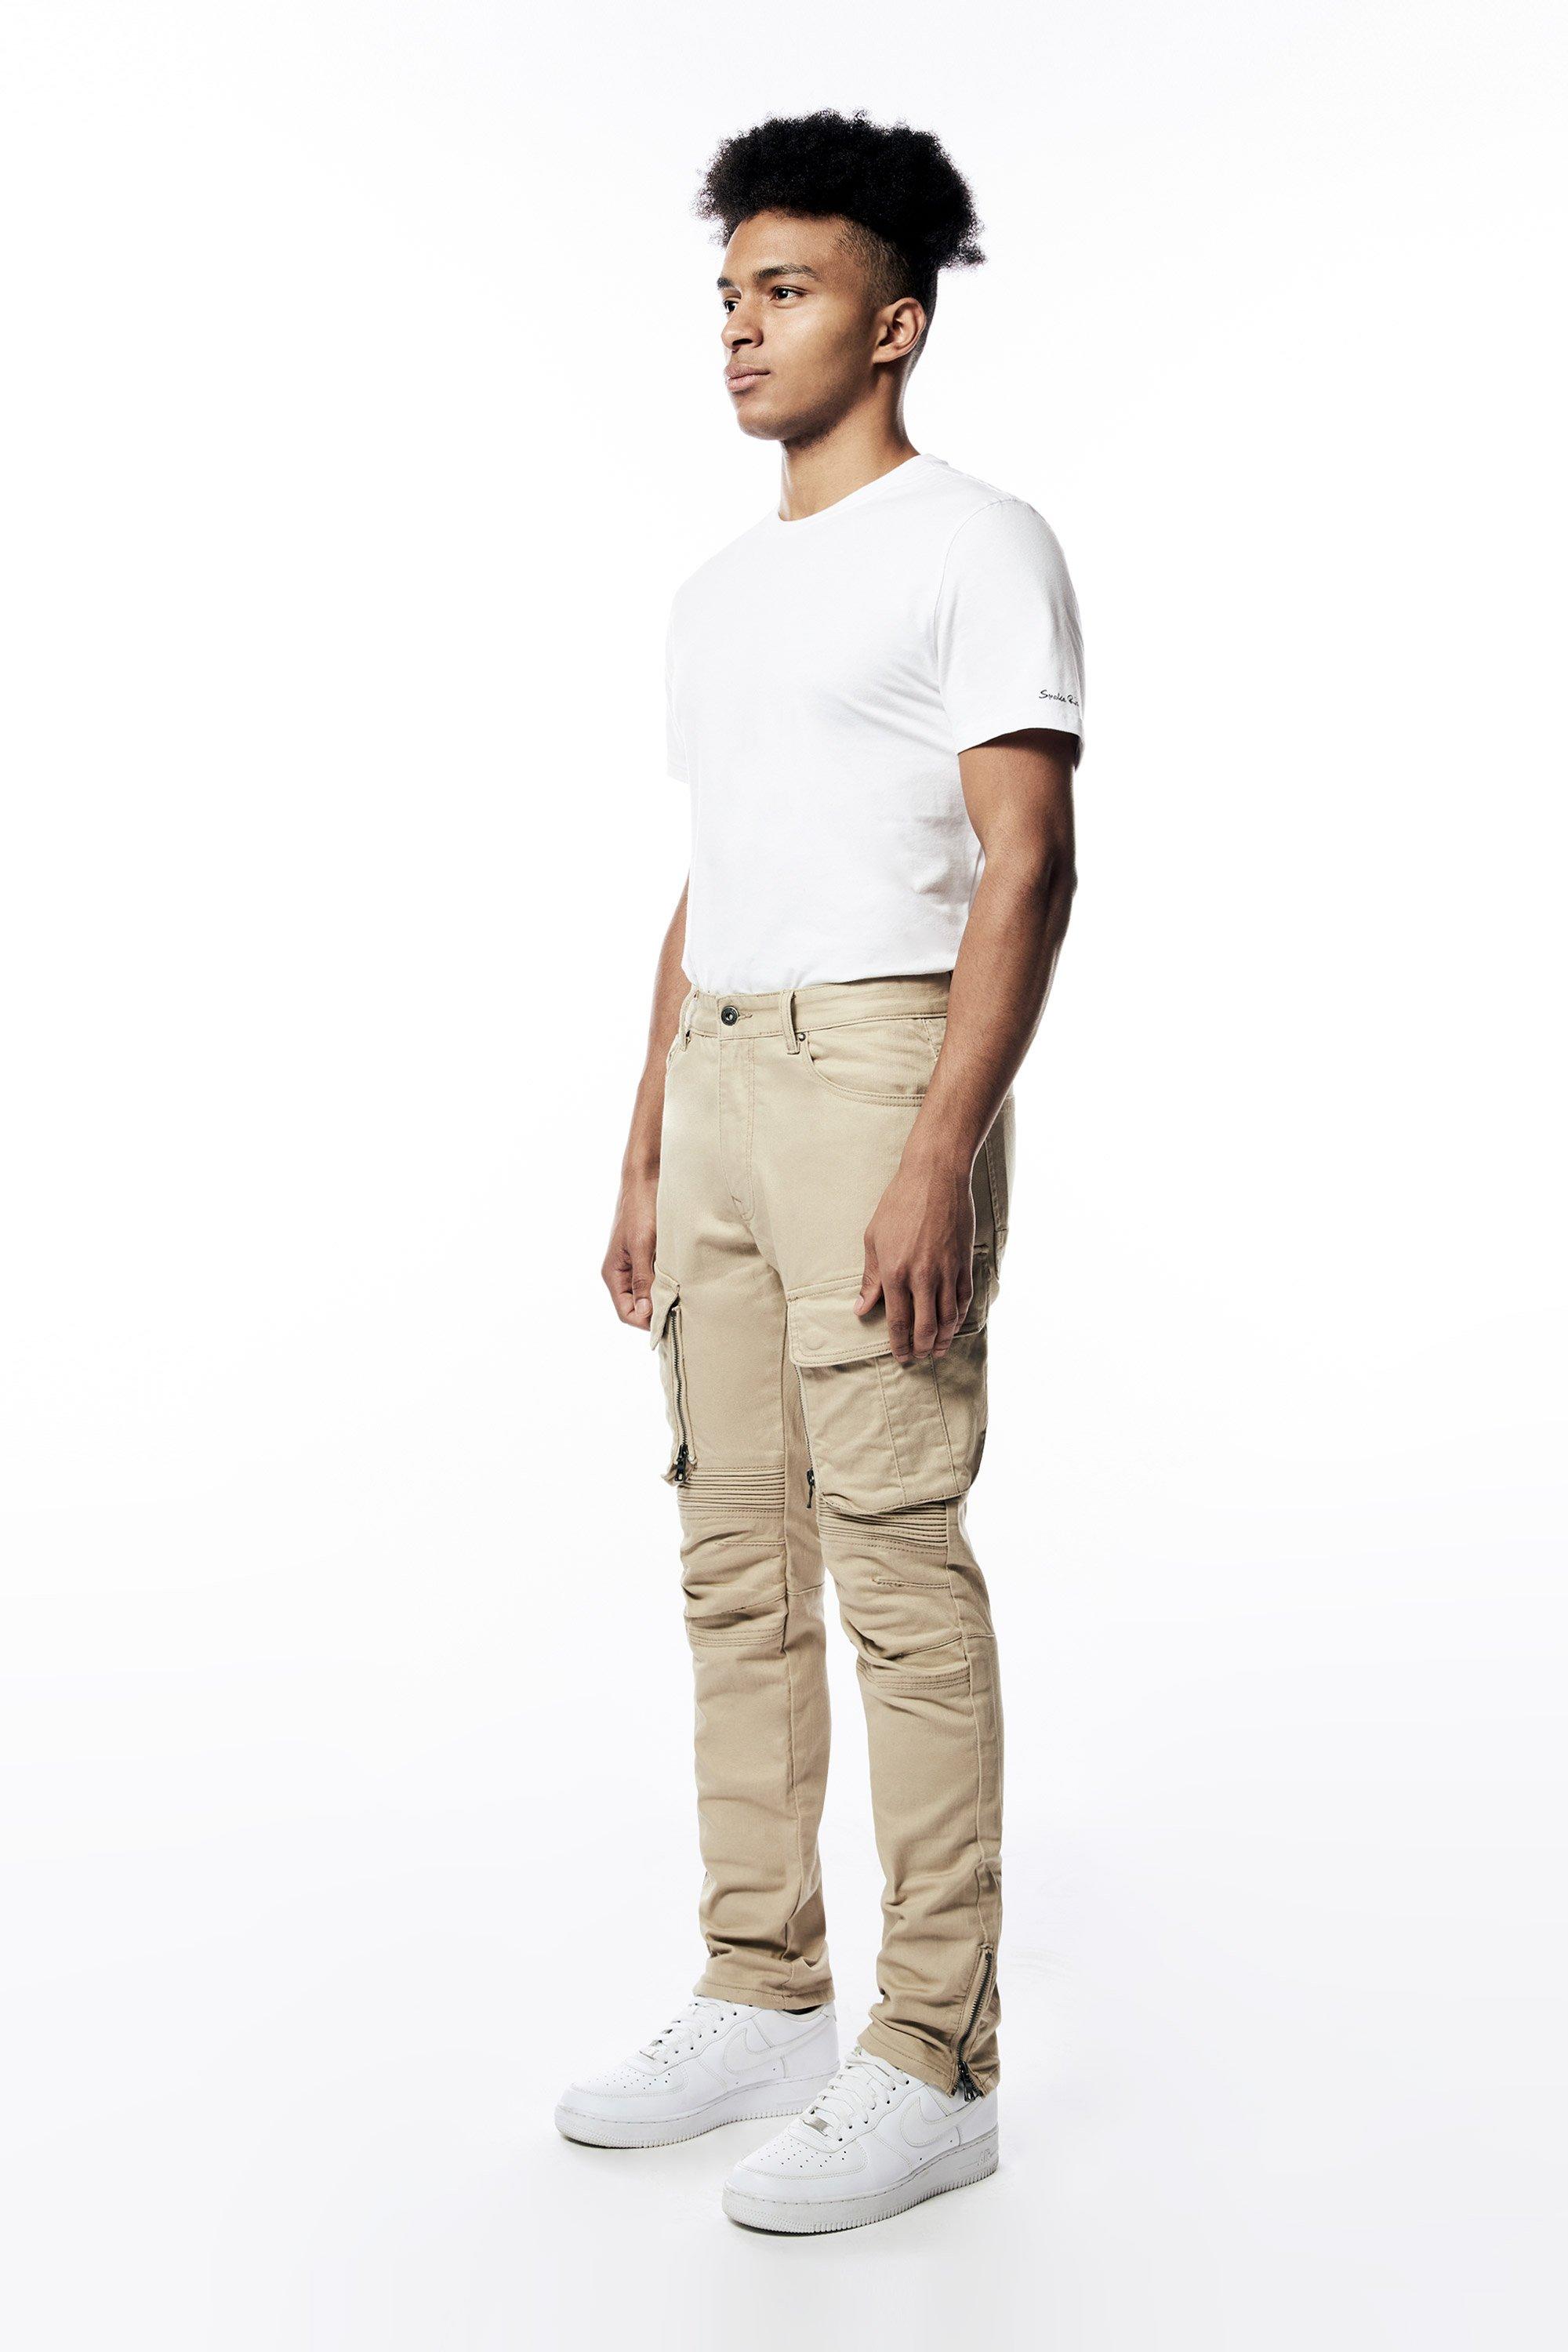 Men's Compression Shirts, Tank Tops, & Pants - Hibbett